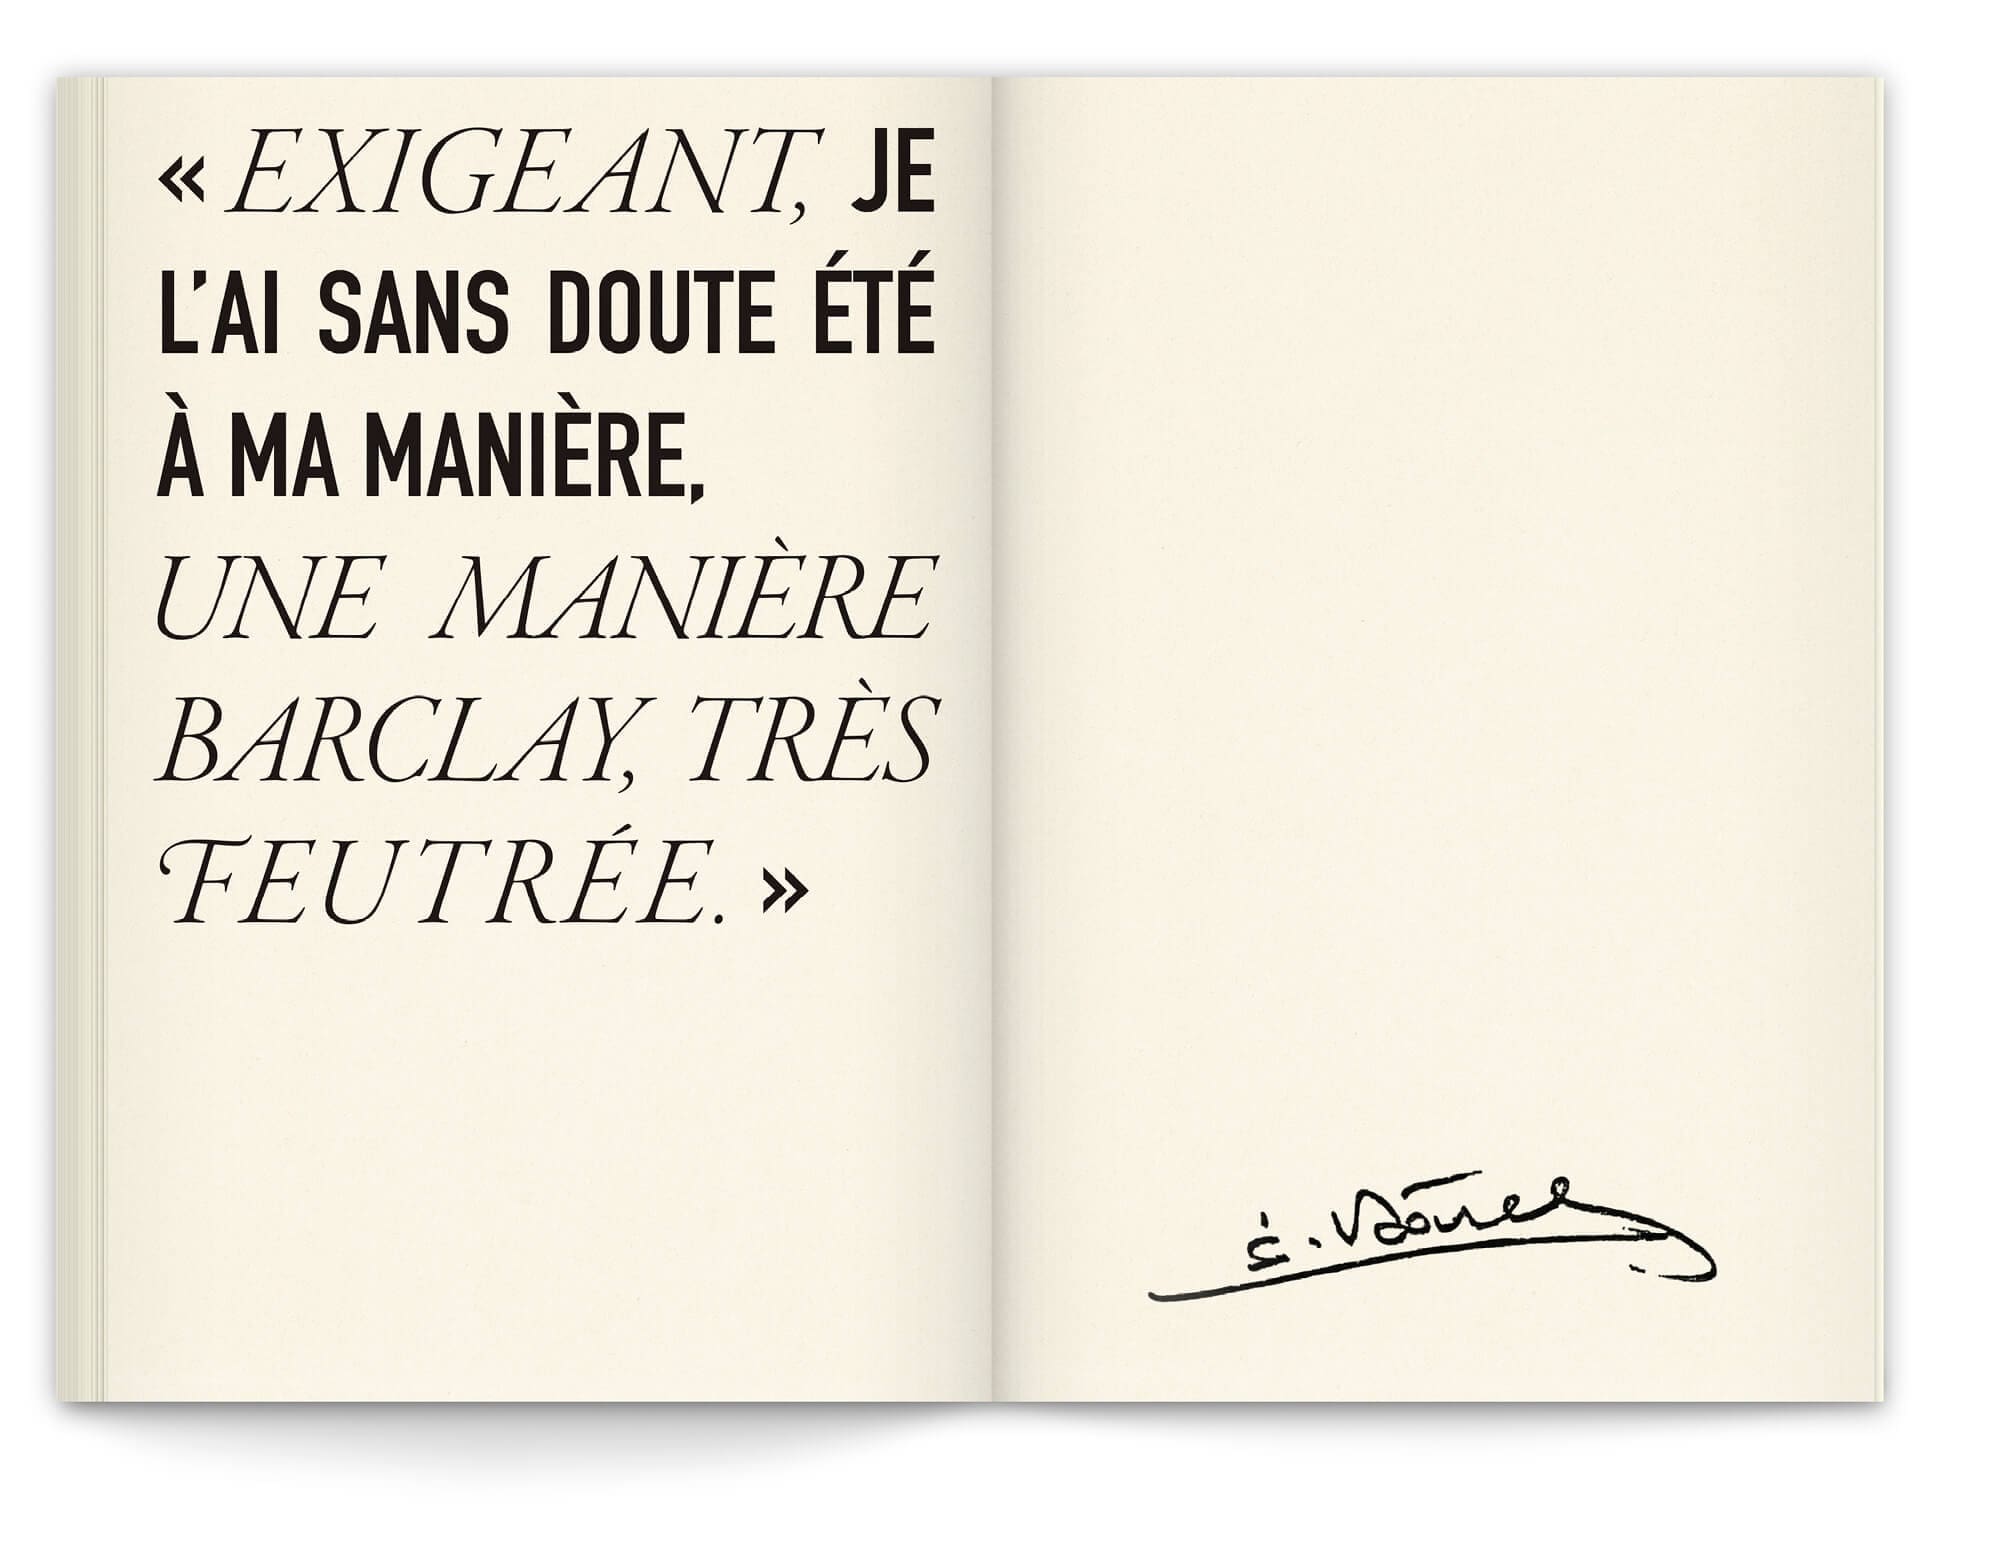 La signature d'Eddy Barclay avec une citation à la fin du livre, design graphique IchetKar, éditions riveneuves